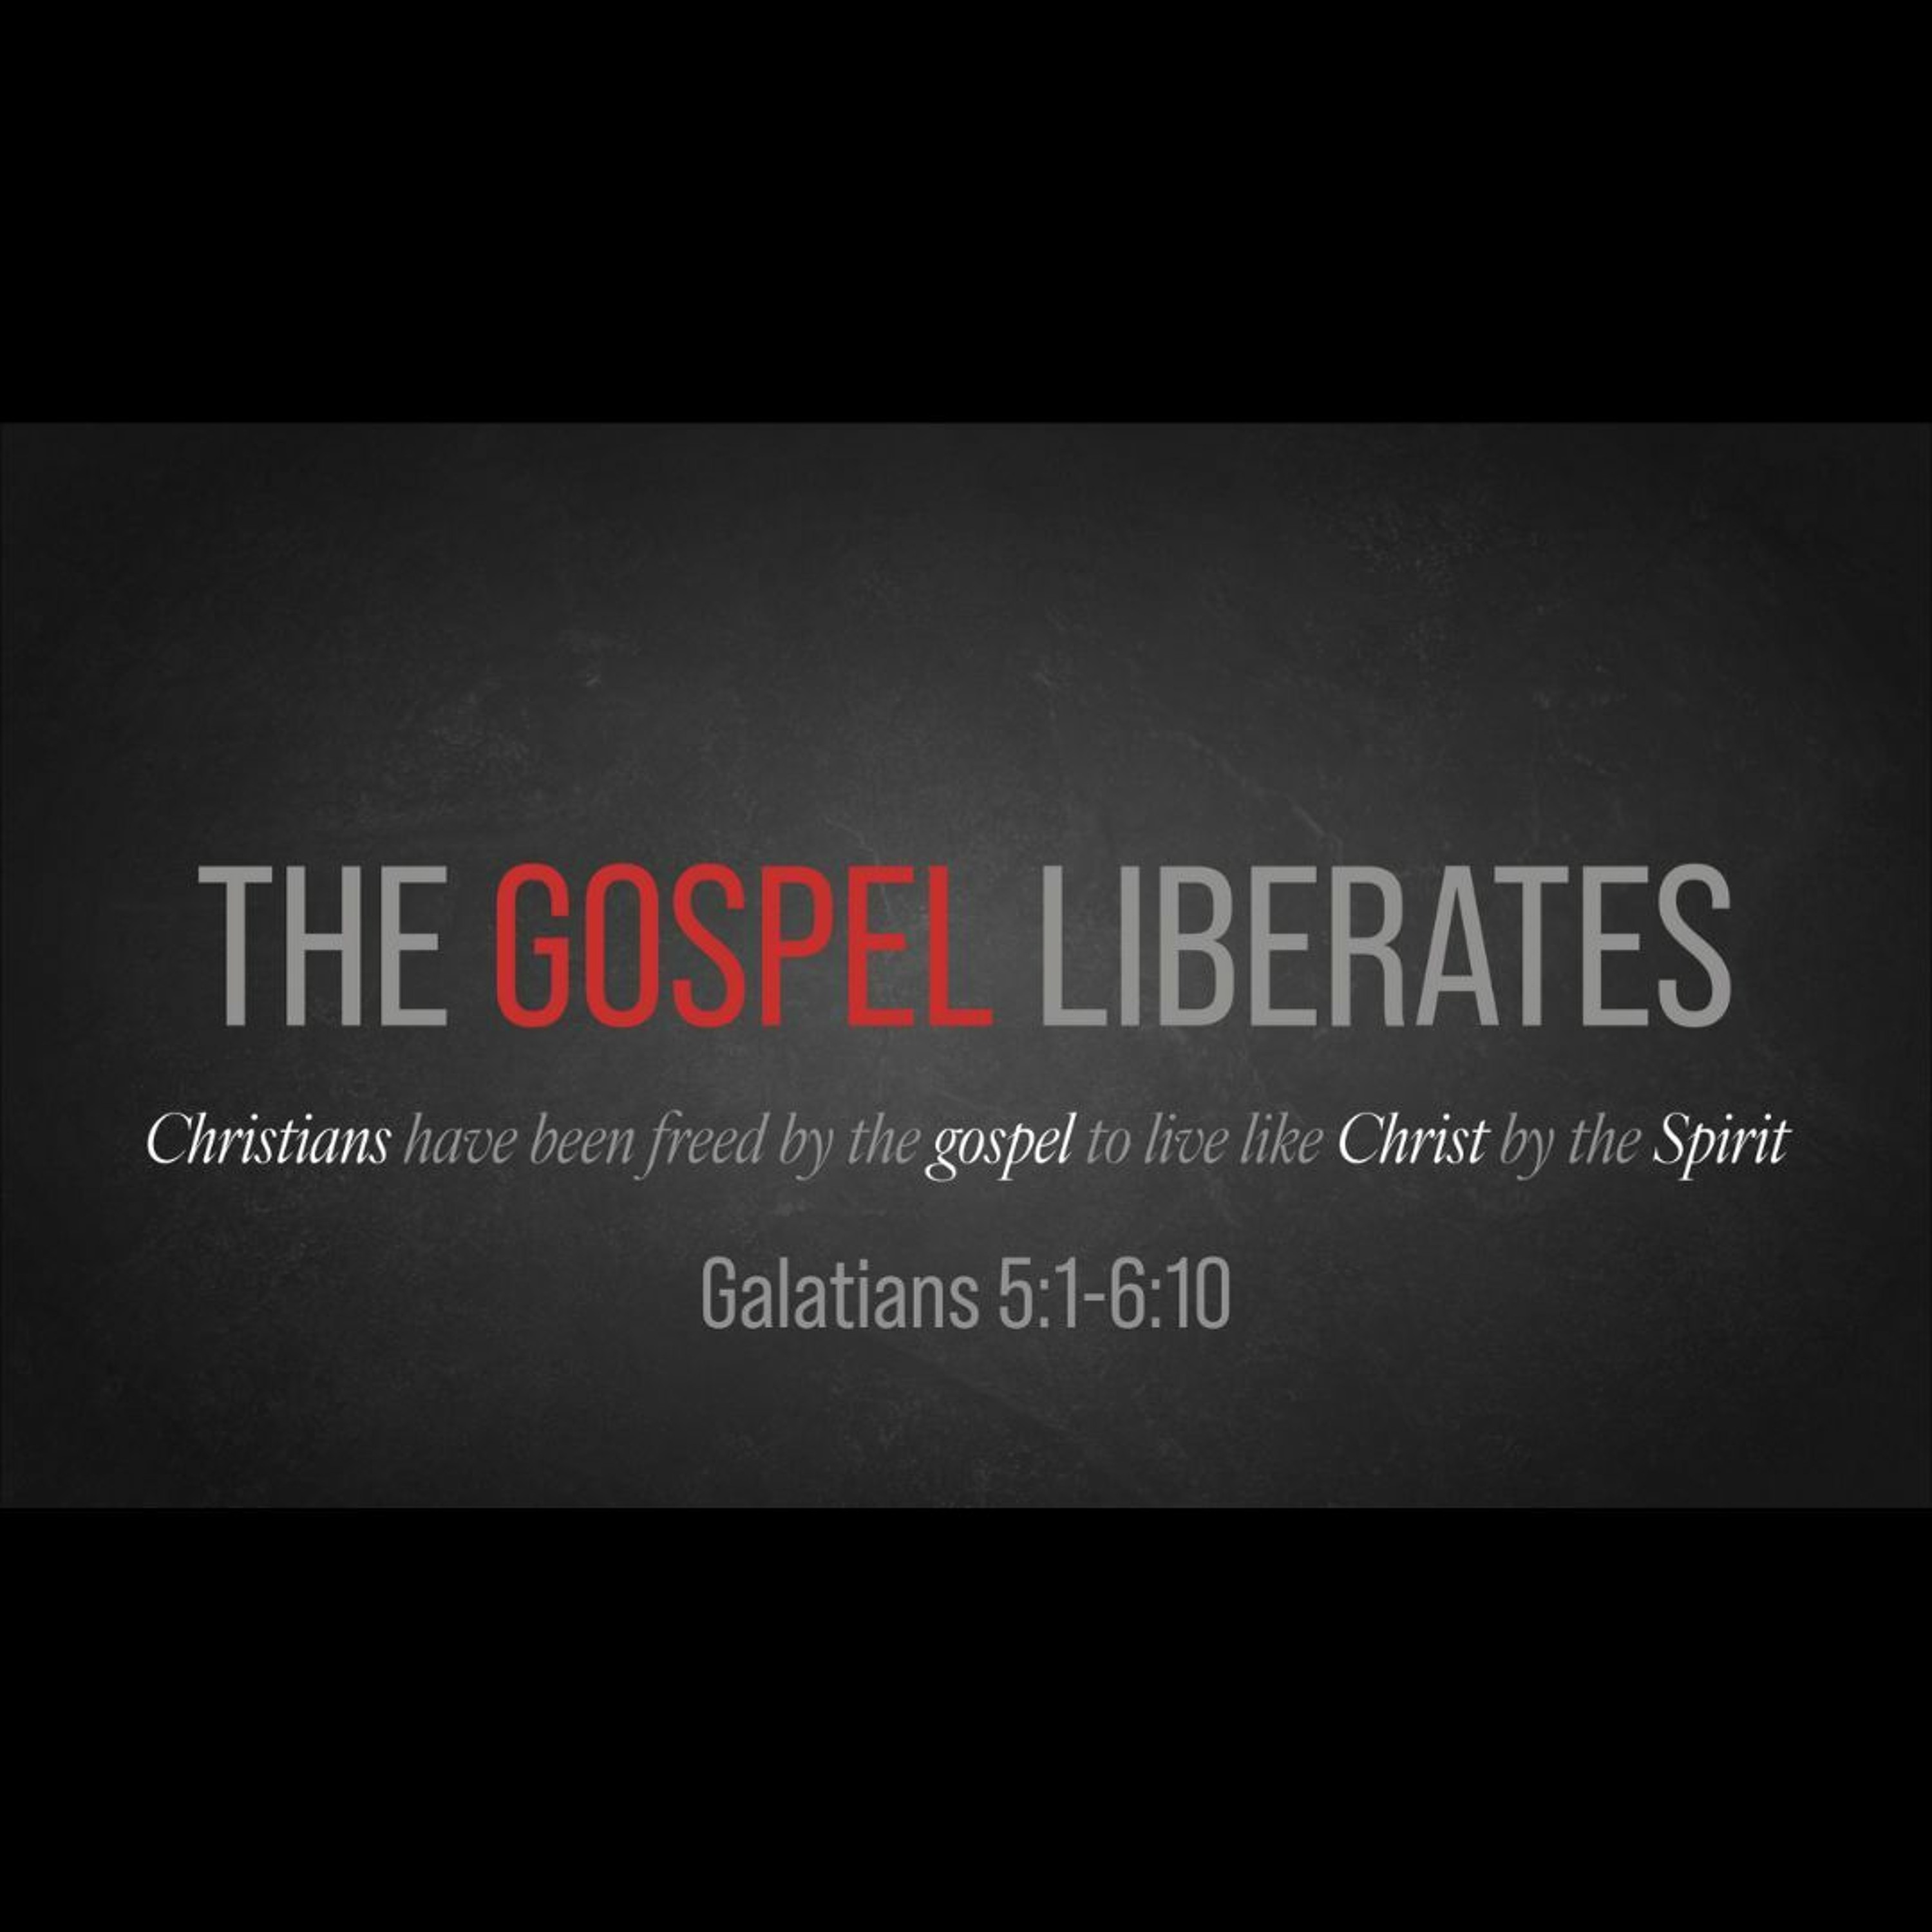 The Gospel Liberates (Galatians 5:1-6:10)